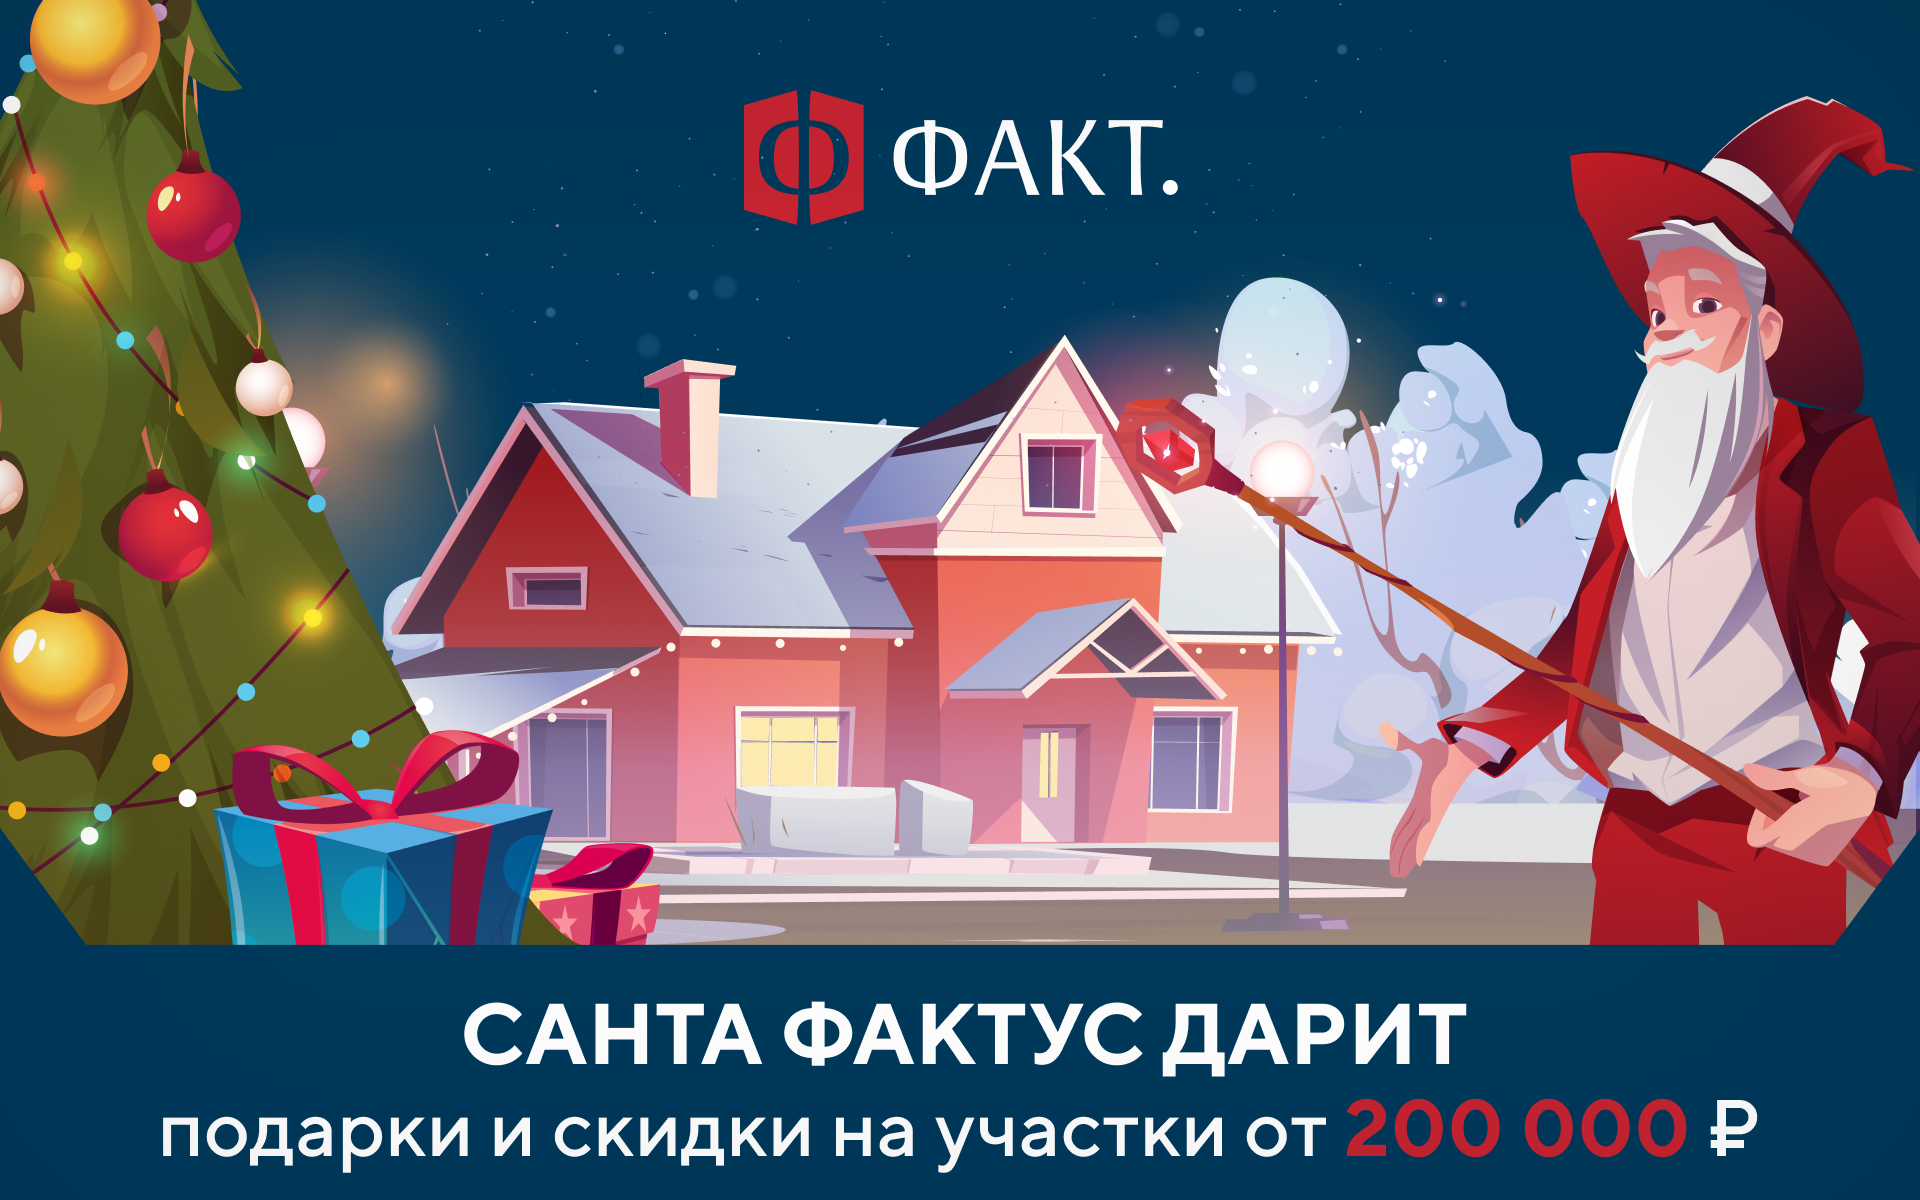 Санта Фактус дарит подарки и скидки на участки от 200 000 рублей!